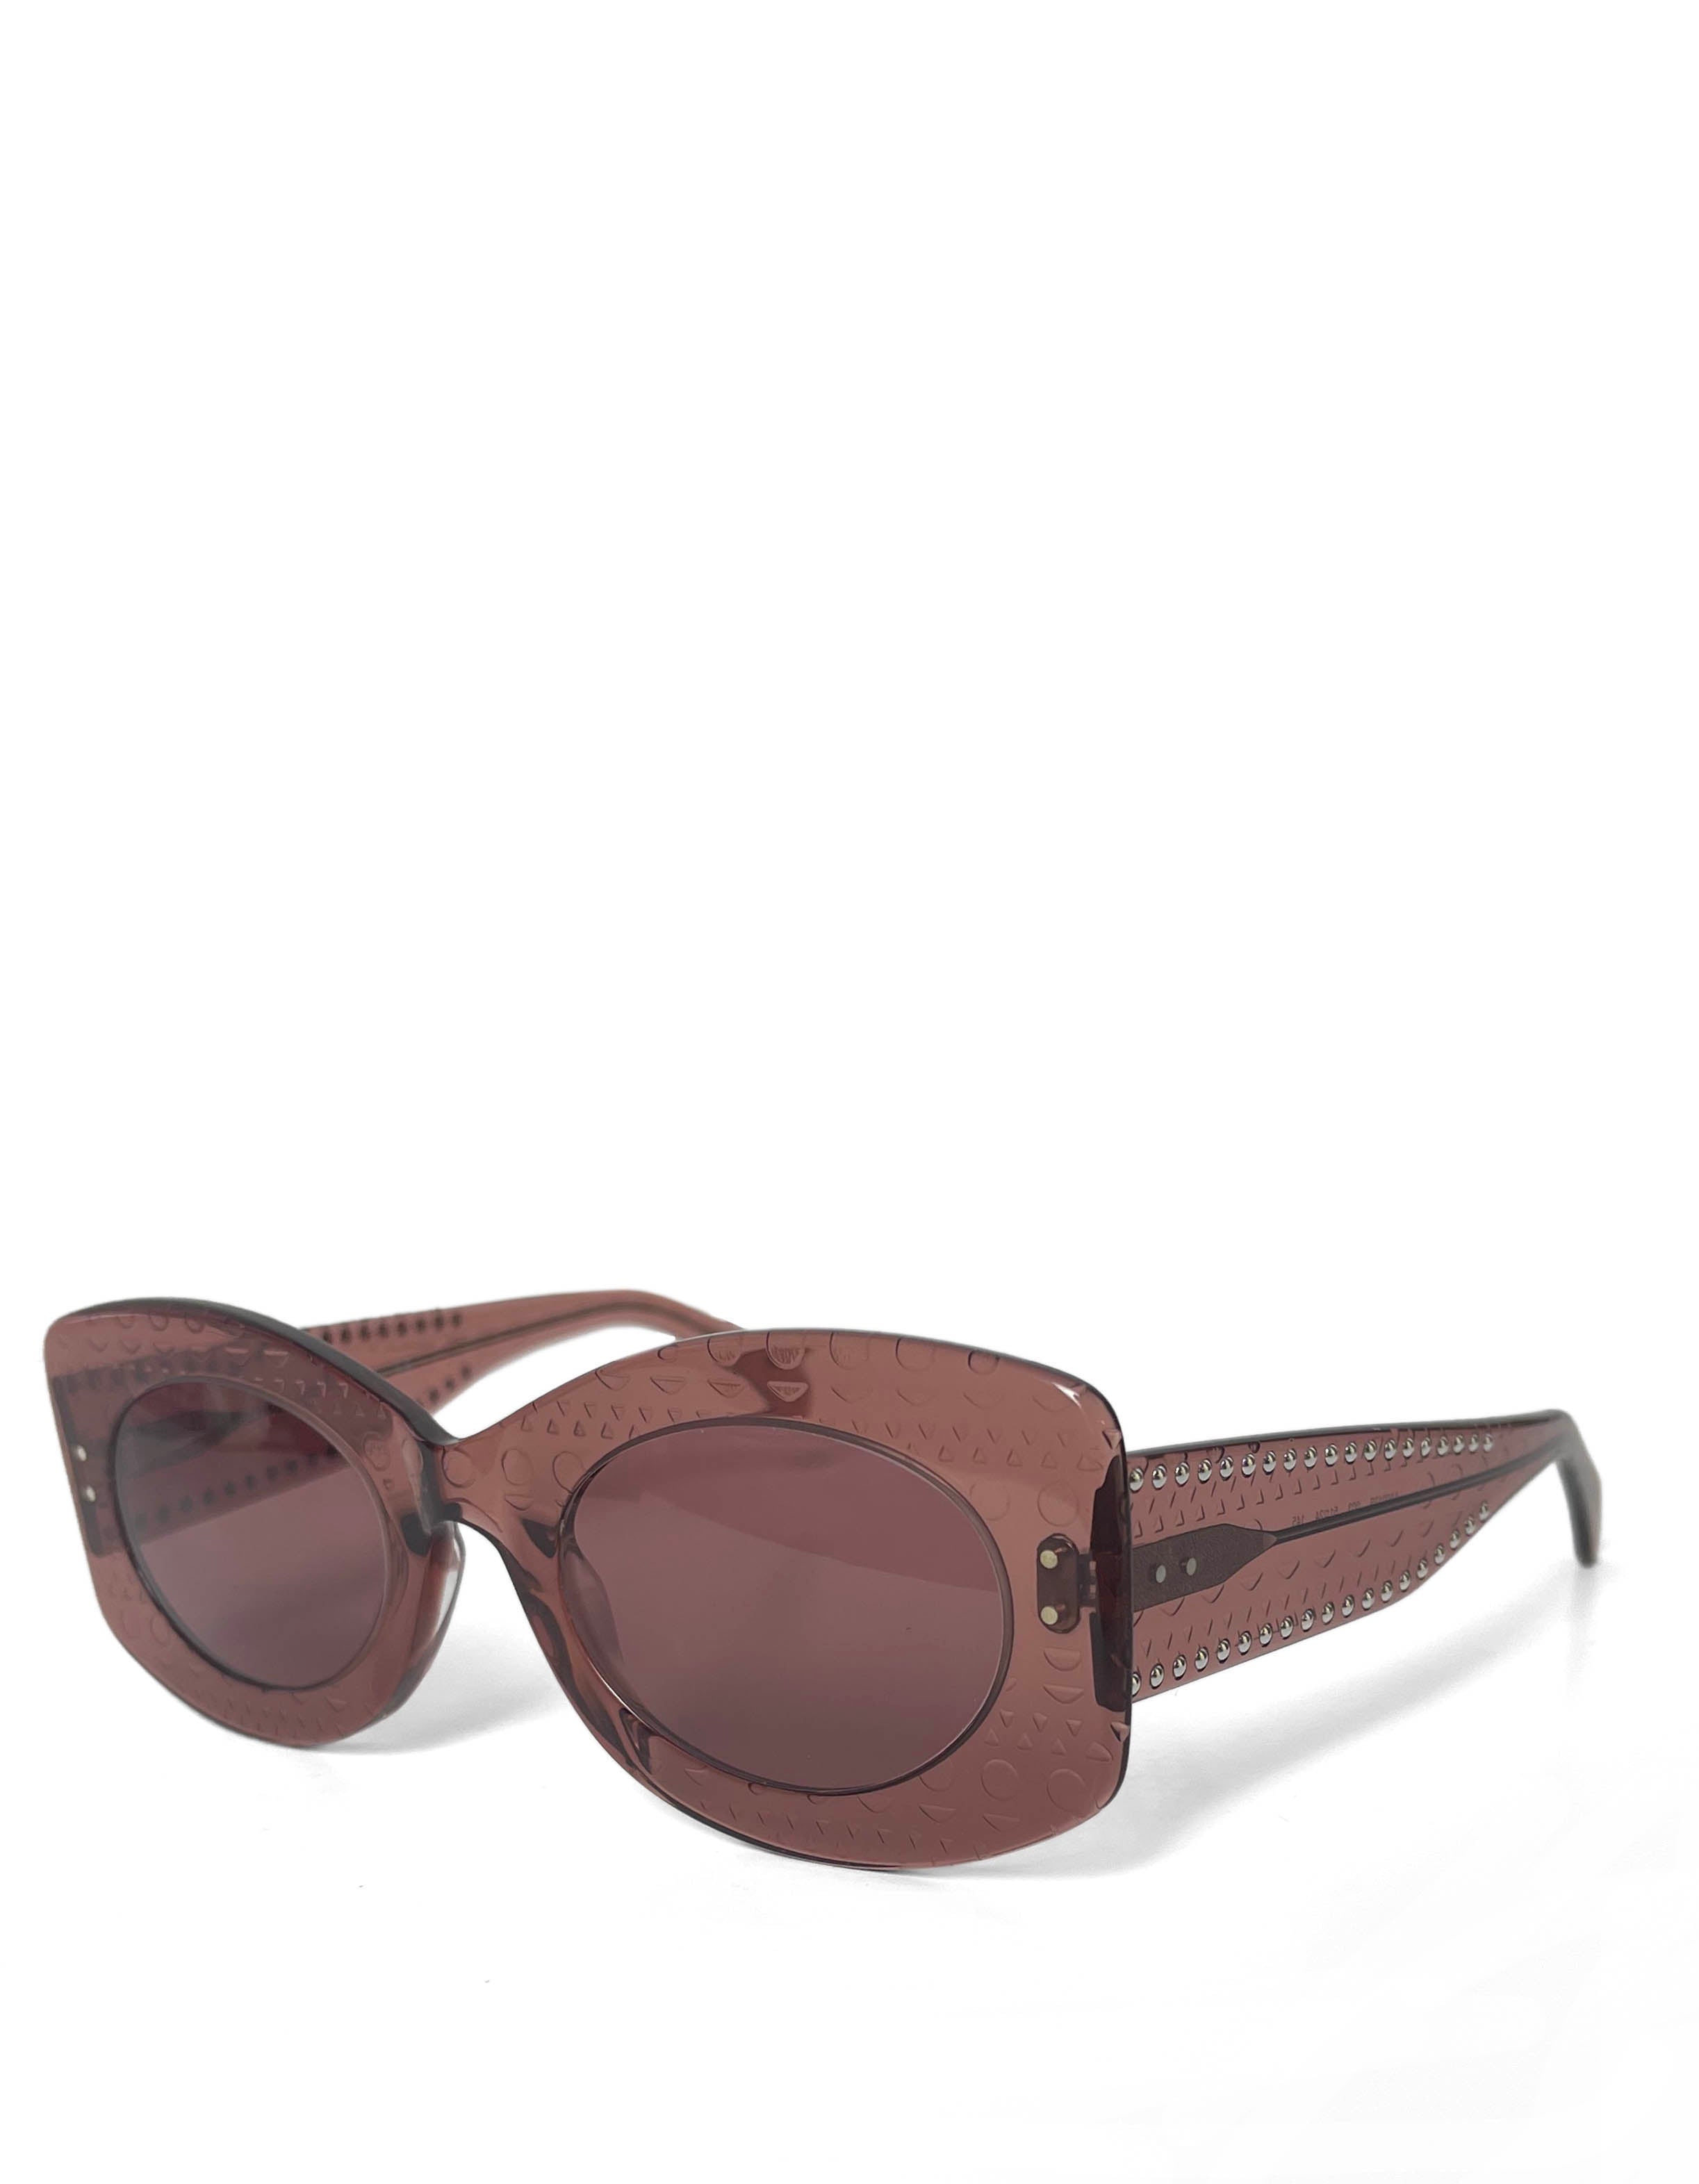 Alaia 2020 Nude Acetate AA0013S Sunglasses w/ Studding